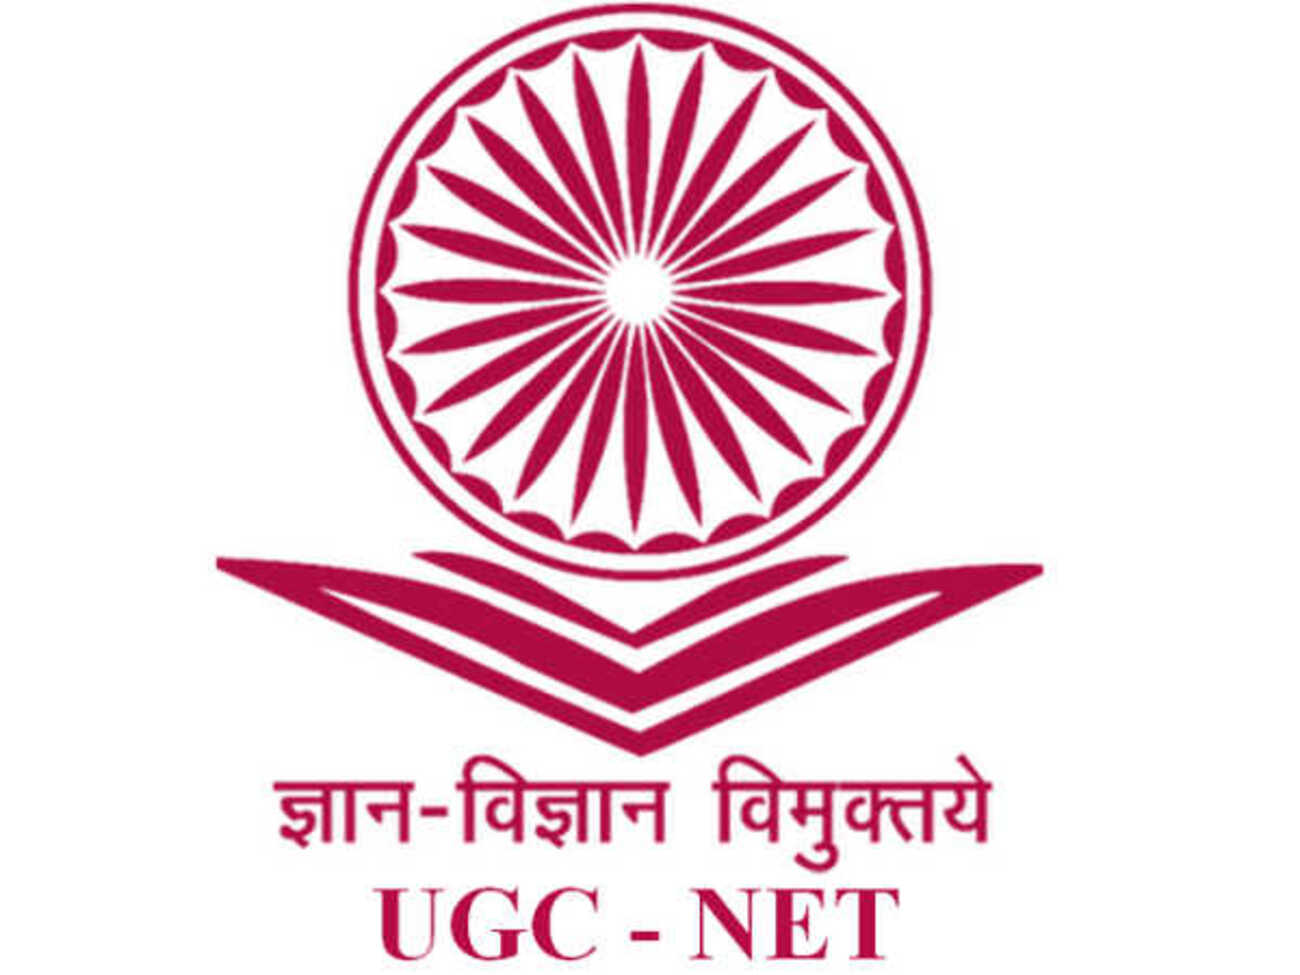 UGC NET 2023: उम्मीदवारों के लिए जरूरी खबर, जल्द जारी होंगे यूजीसी नेट के रिजल्ट्स, ऐसे करें चेक